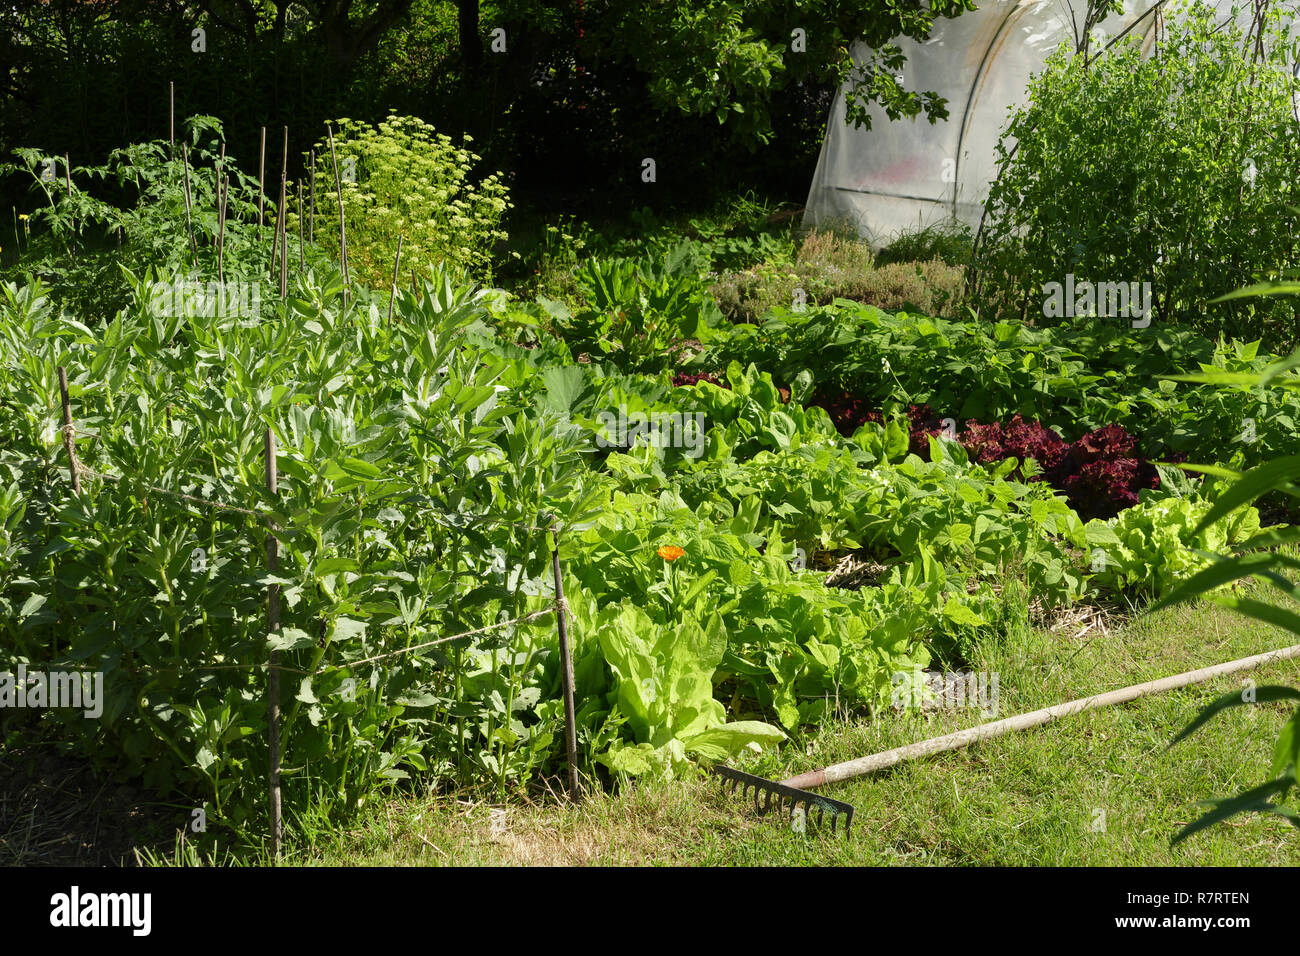 Gemüse wächst im Garten (Bohnen, Salate, grüne Bohnen, Erbsen durch Canes unterstützt, Pflanzen von Tomaten, Petersilie, Zucchini Pflanzen). Stockfoto